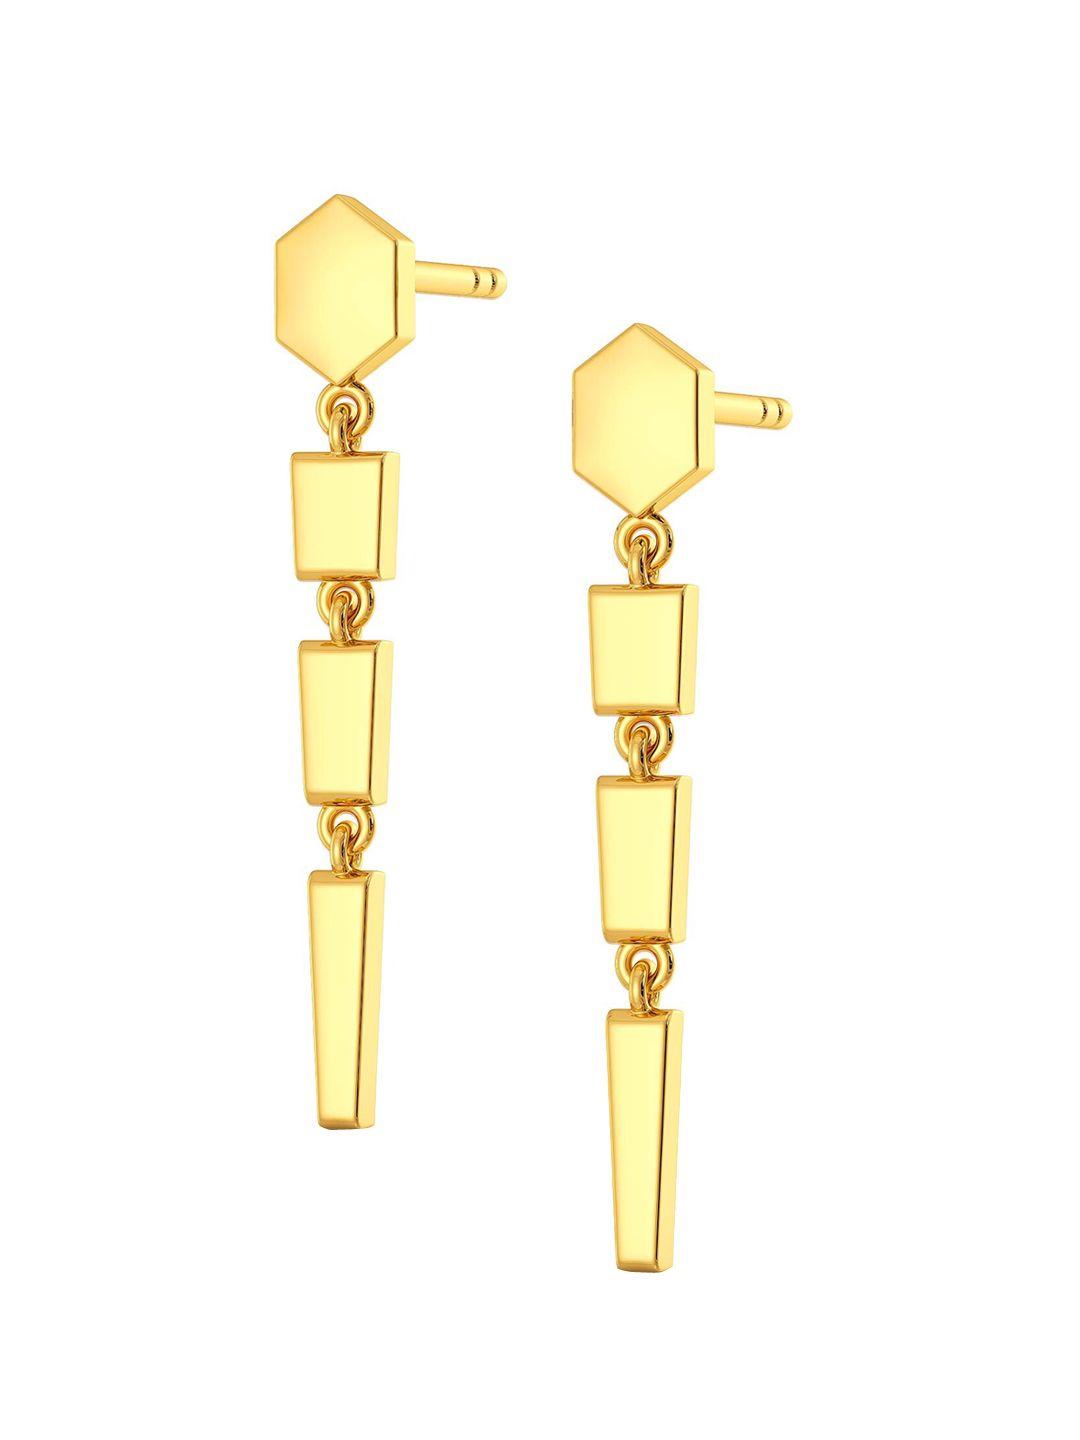 melorra dagger collar 18kt gold drop earrings- 2.41 gm